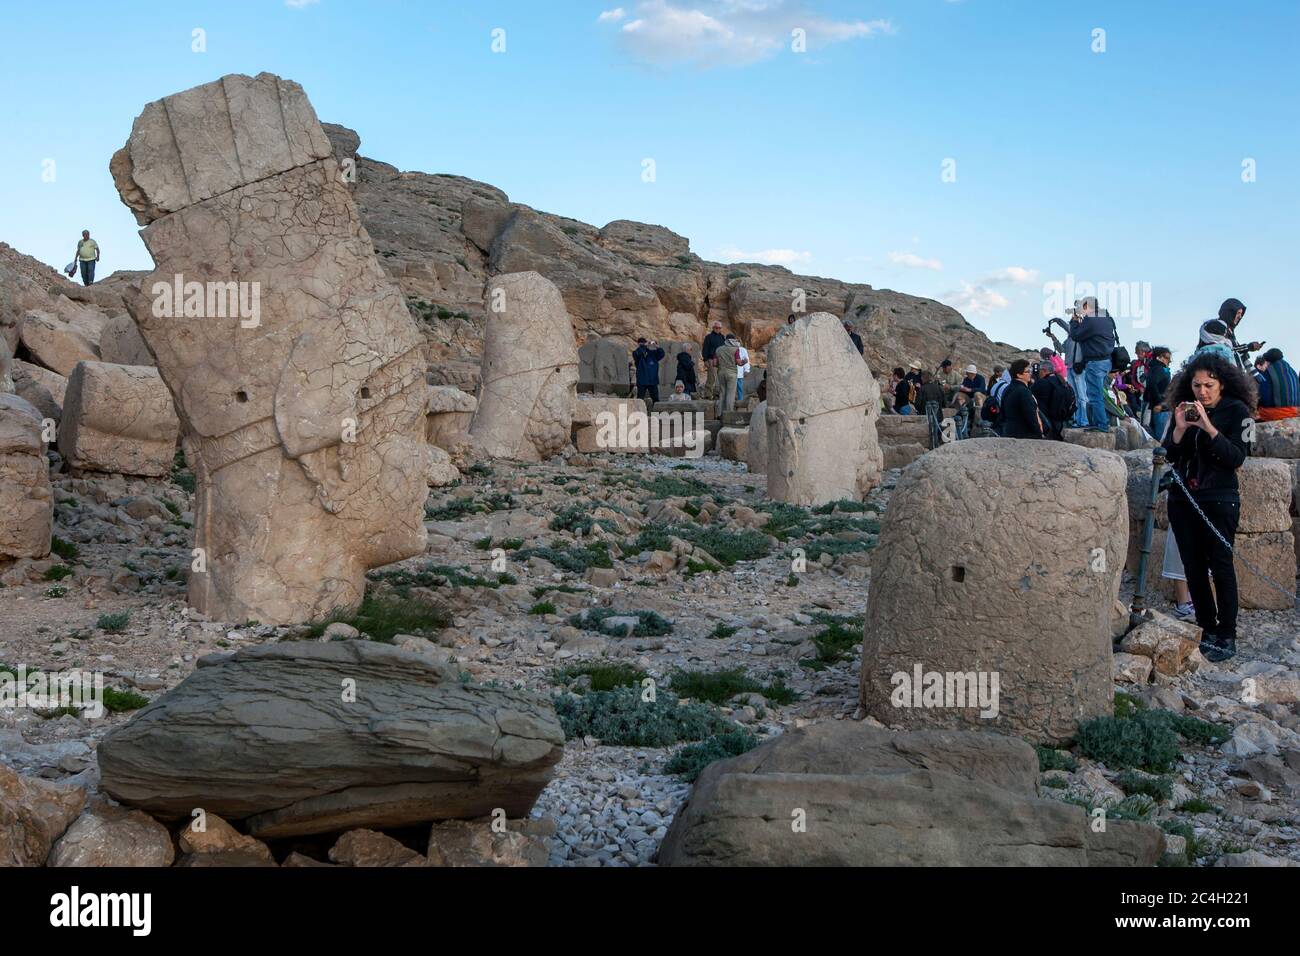 Touristen auf der westlichen Plattform am Mount Nemrut in der Türkei. Steinstatuen, die hier zu finden sind, sind ein persischer adlergott, Herkules, Antiochus und Zeus. Stockfoto